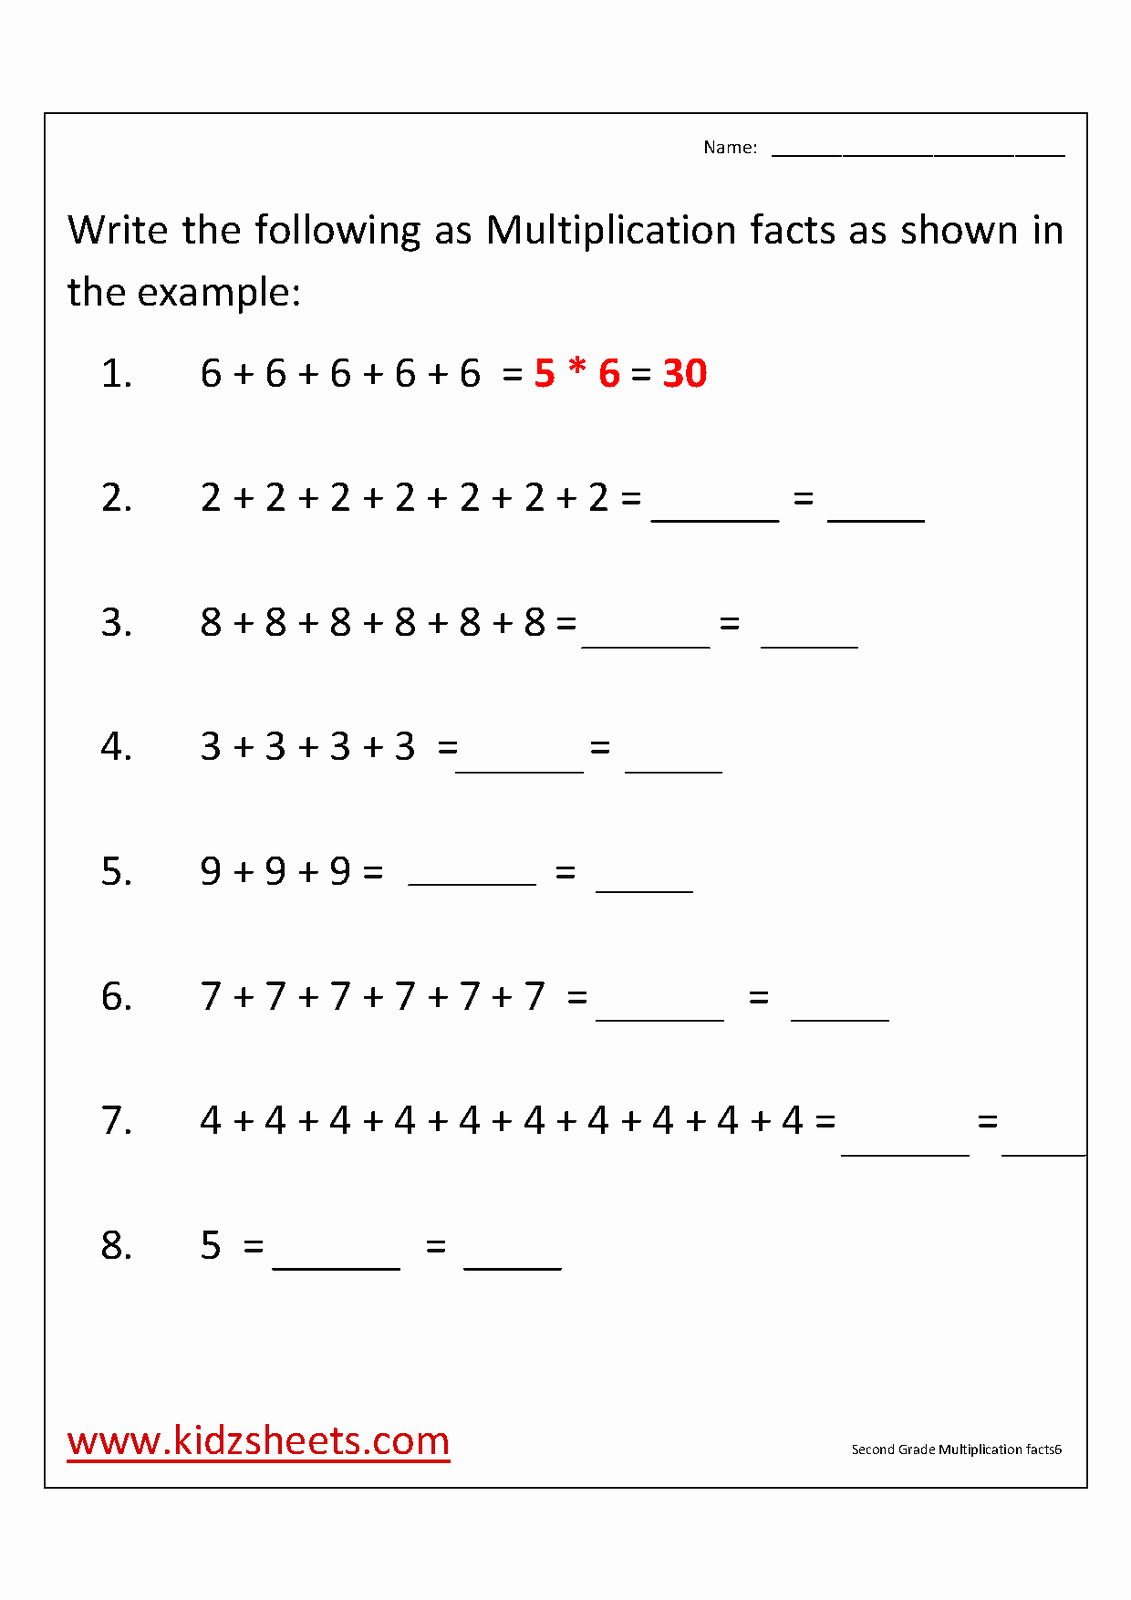 2nd Grade Multiplication Worksheets Best Of Kidz Worksheets Second Grade Multiplication Facts Worksheet6